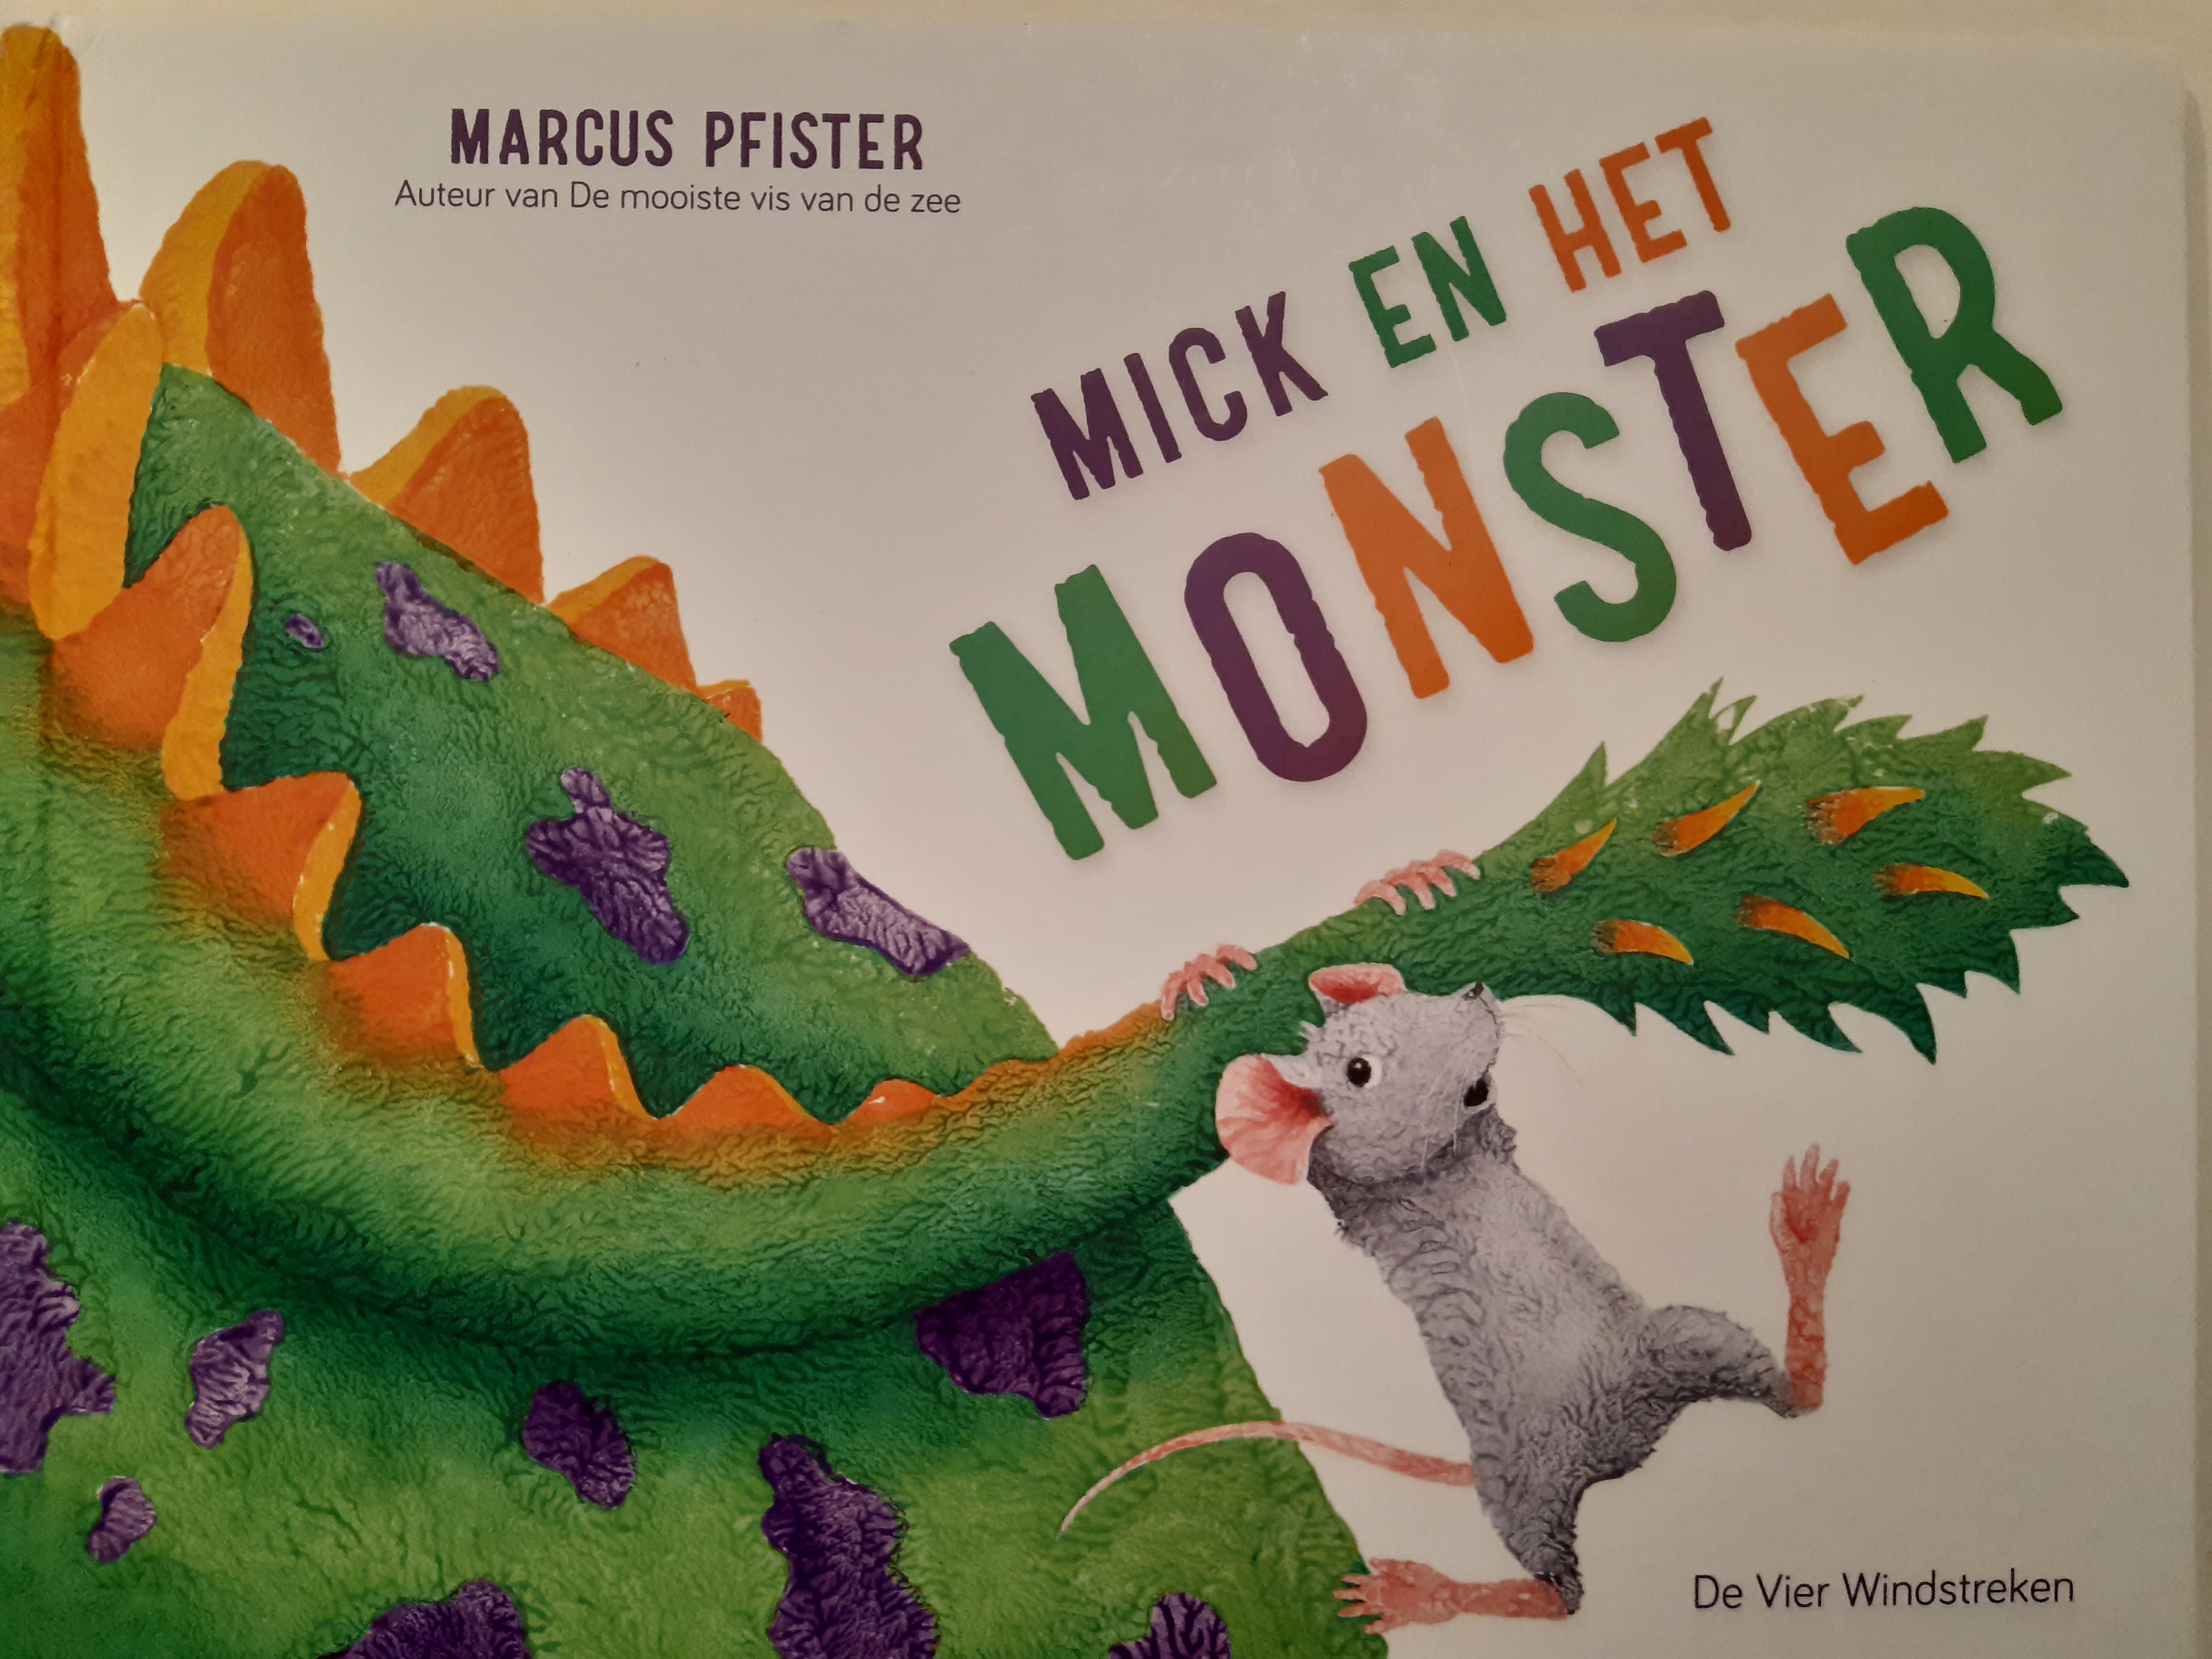 Mick en het monster van Marcus Pfister